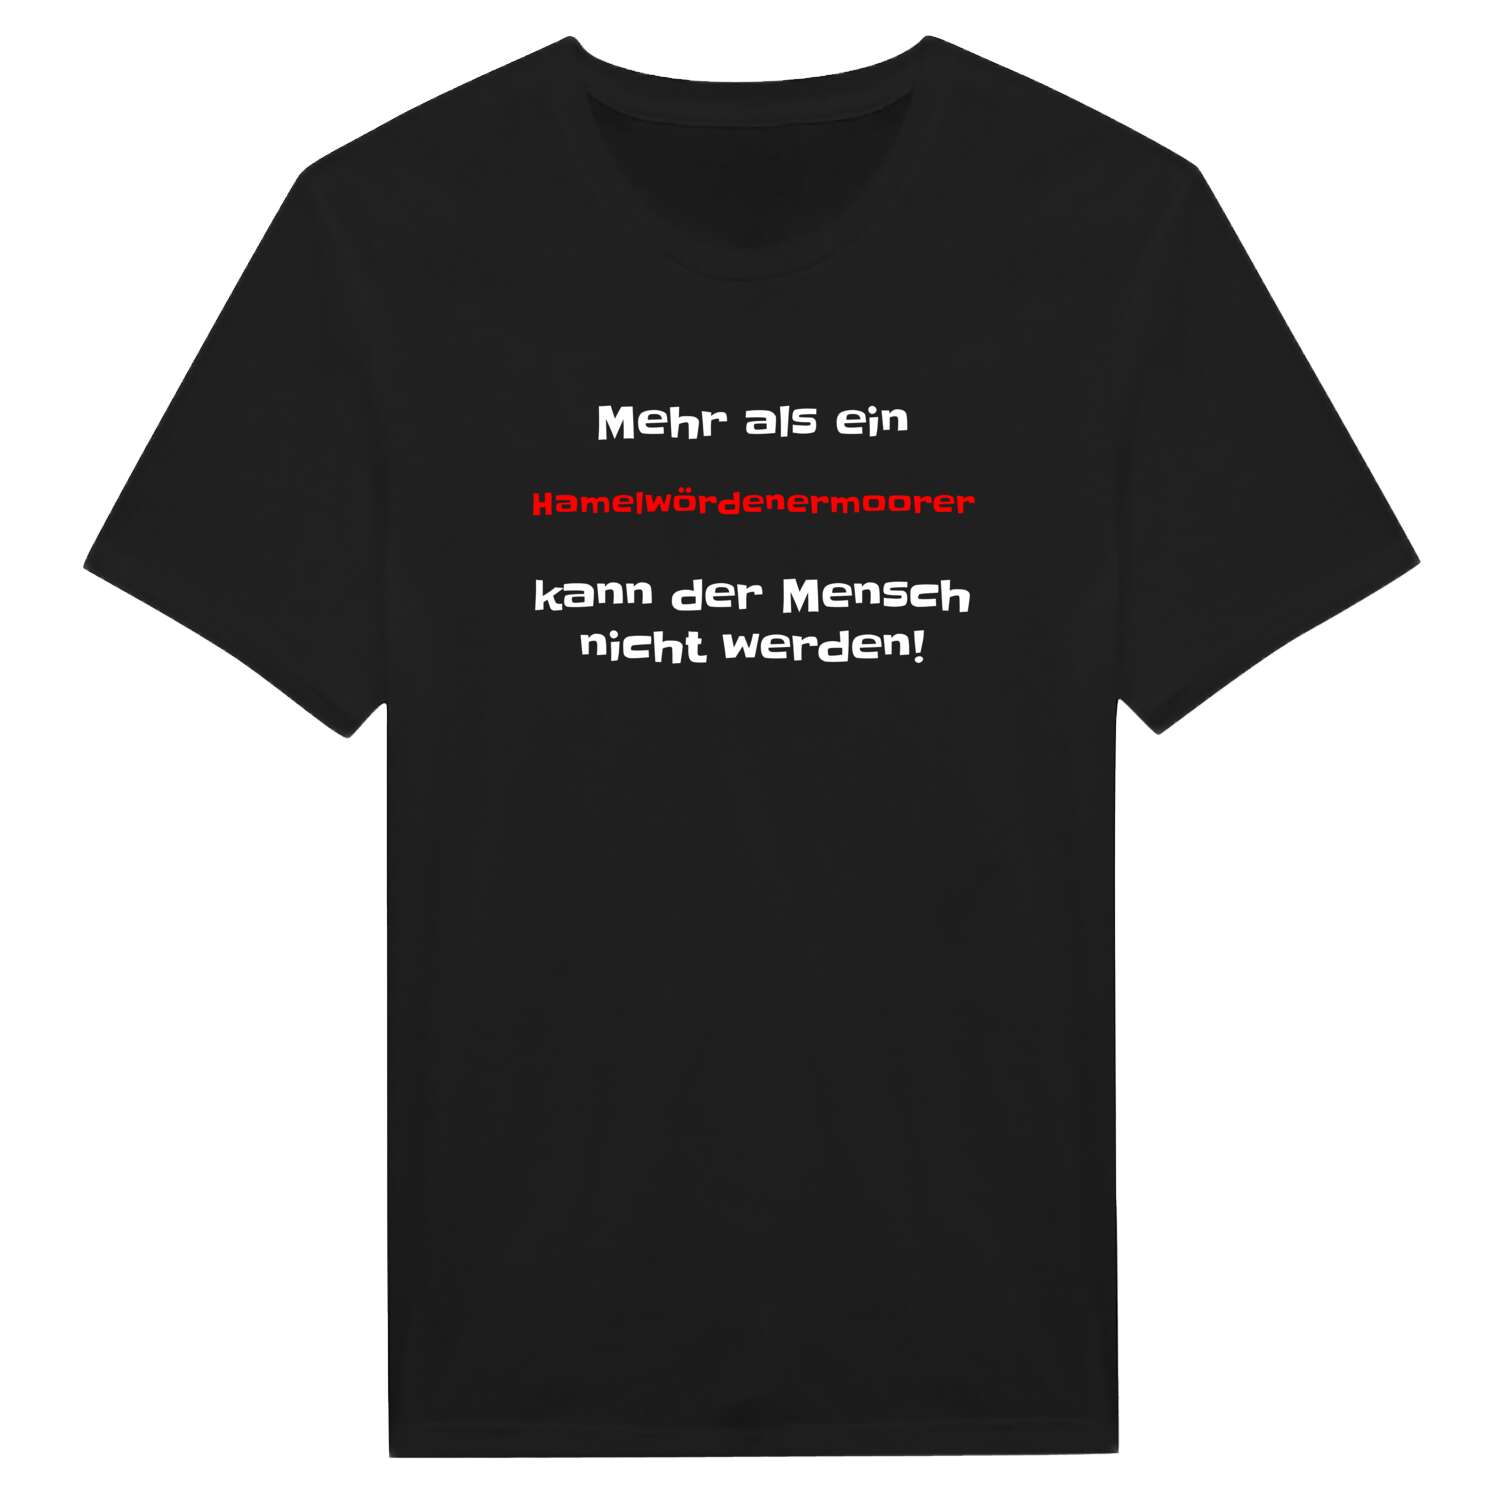 Hamelwördenermoor T-Shirt »Mehr als ein«